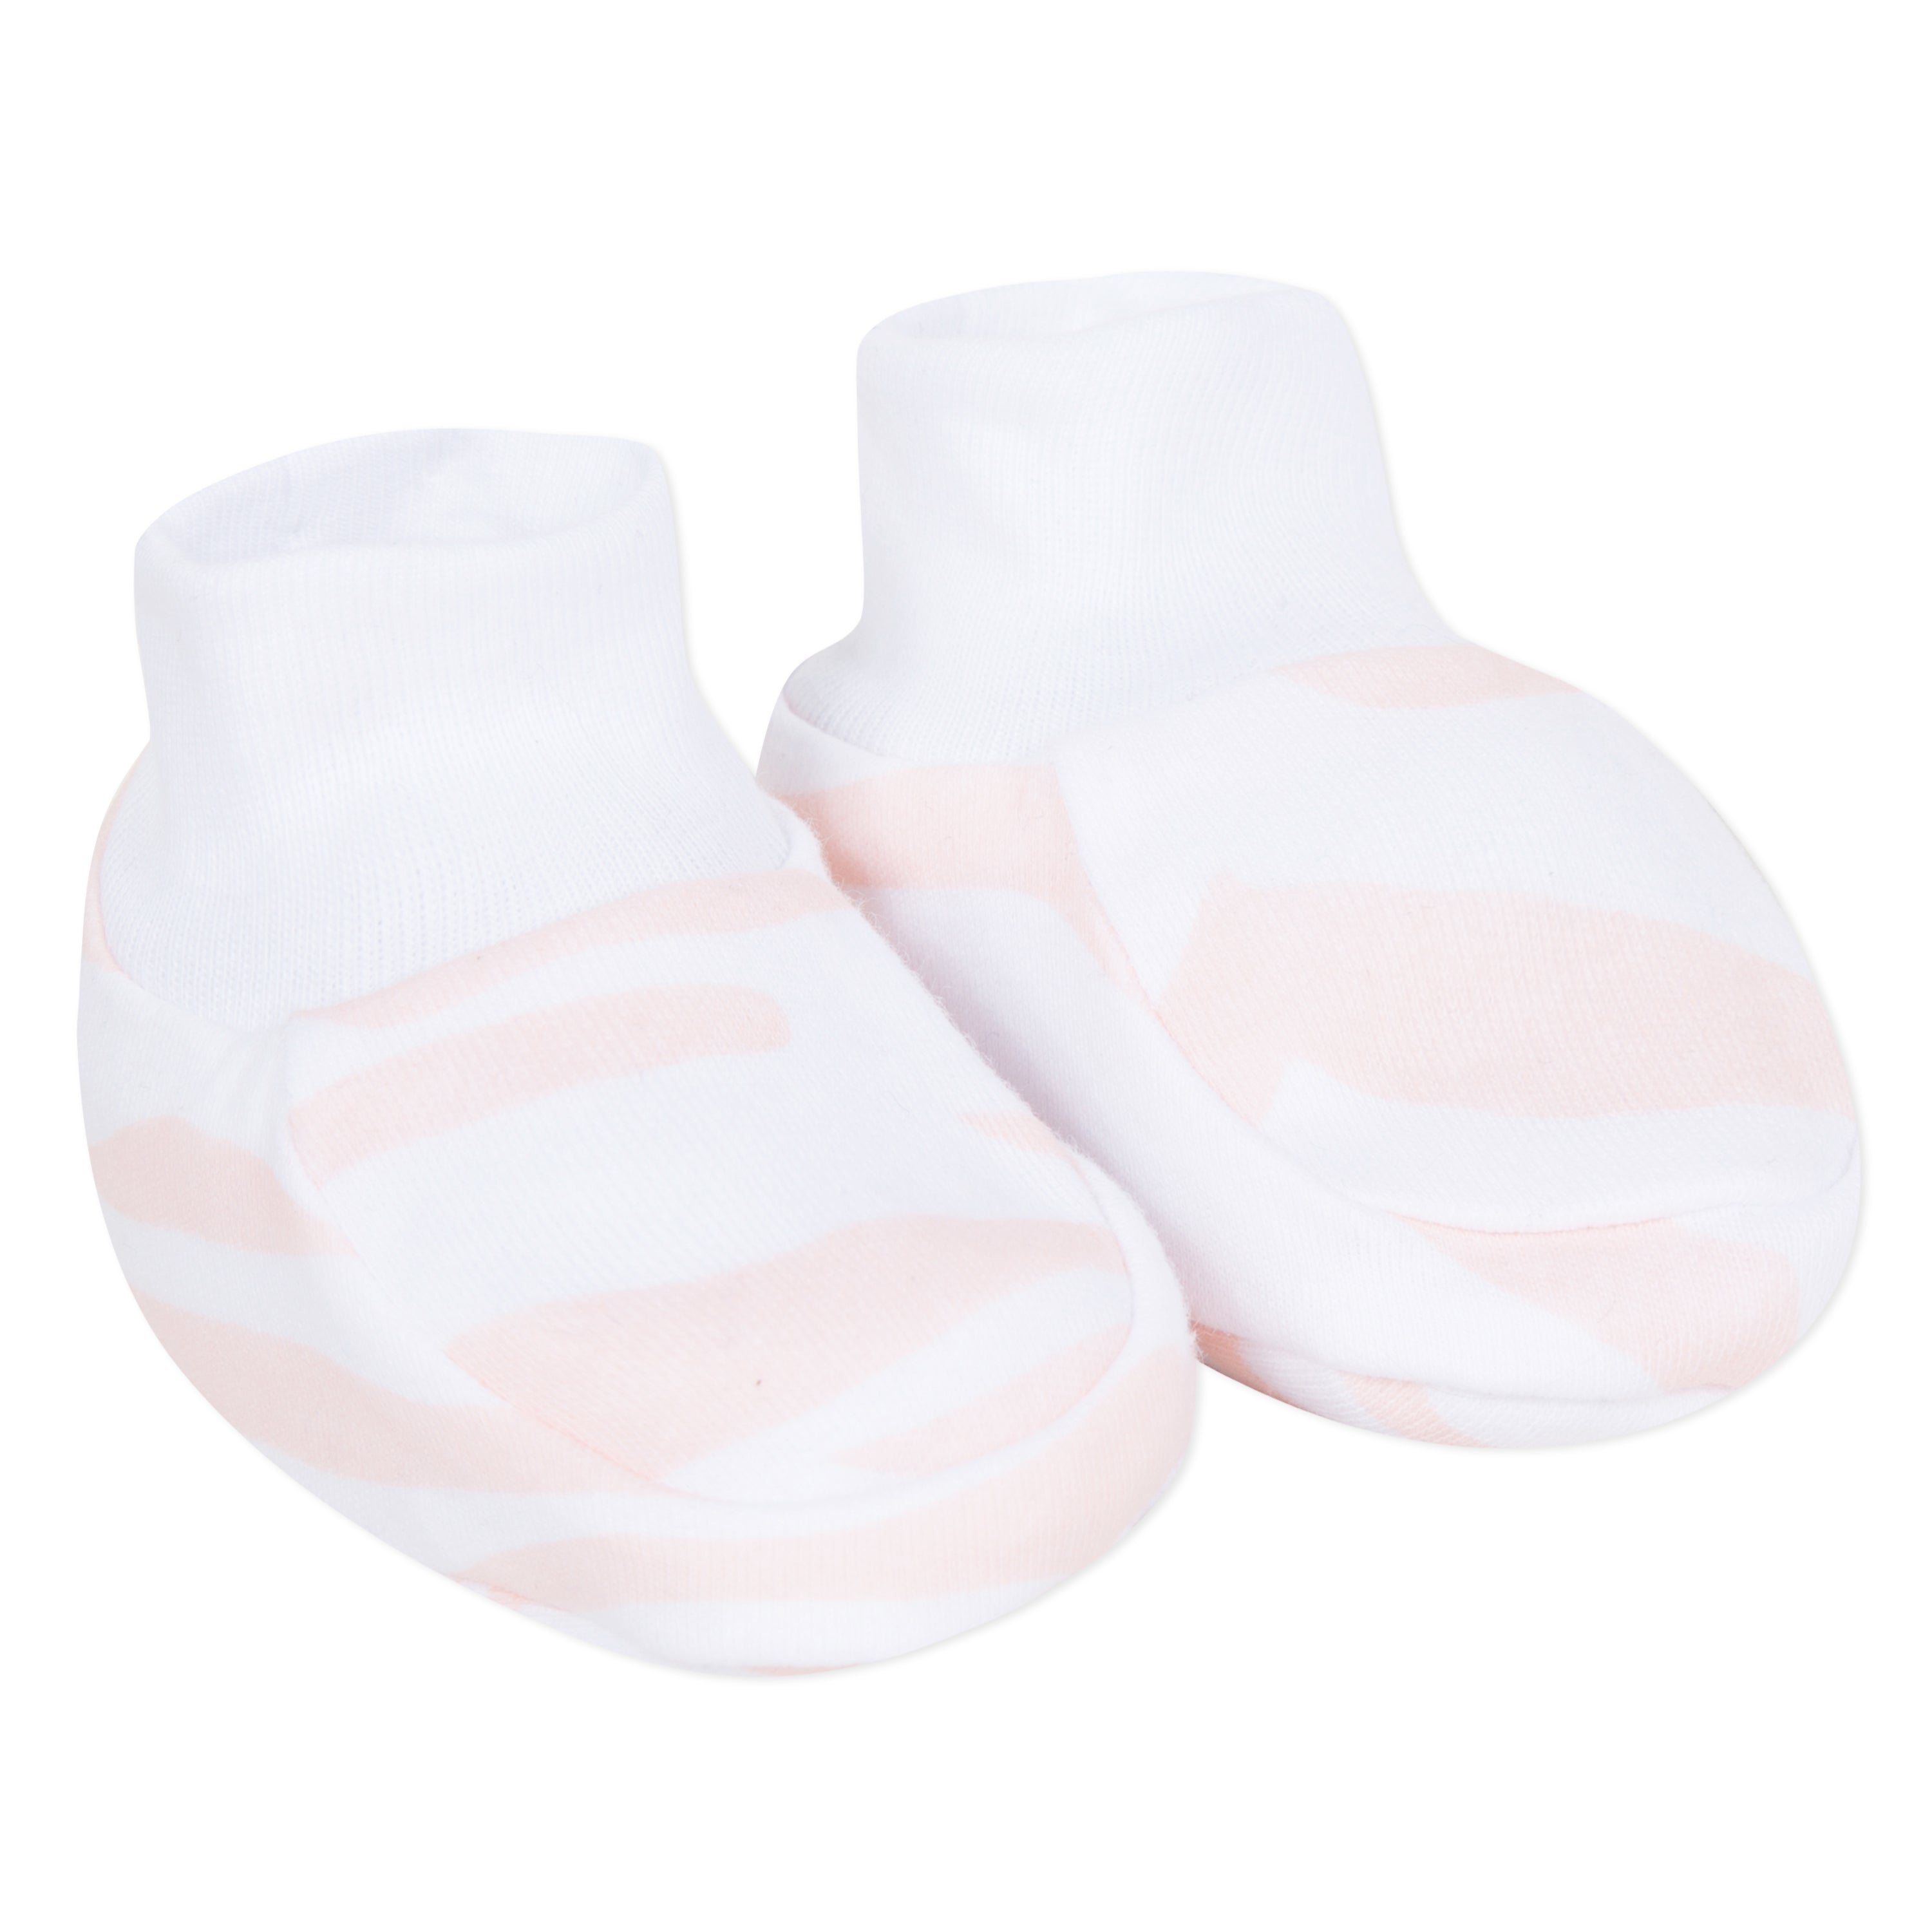 Baby Girls Light Pink Cotton Babysuit Gift Set